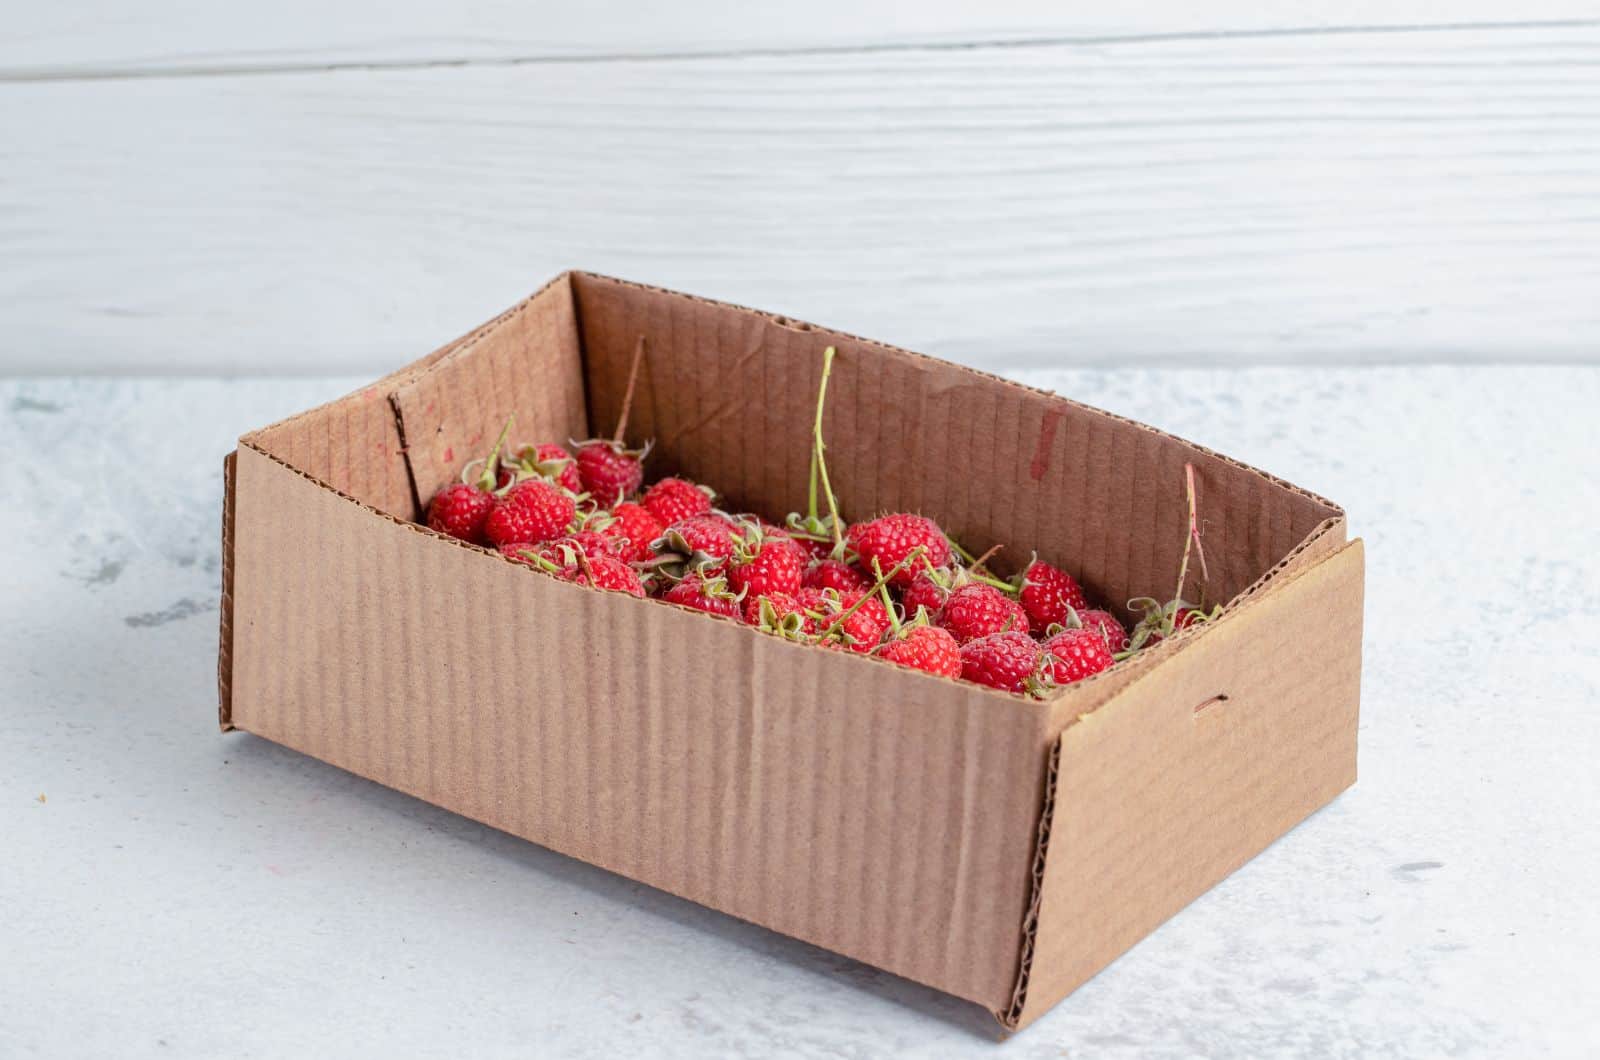 Raspberries in box